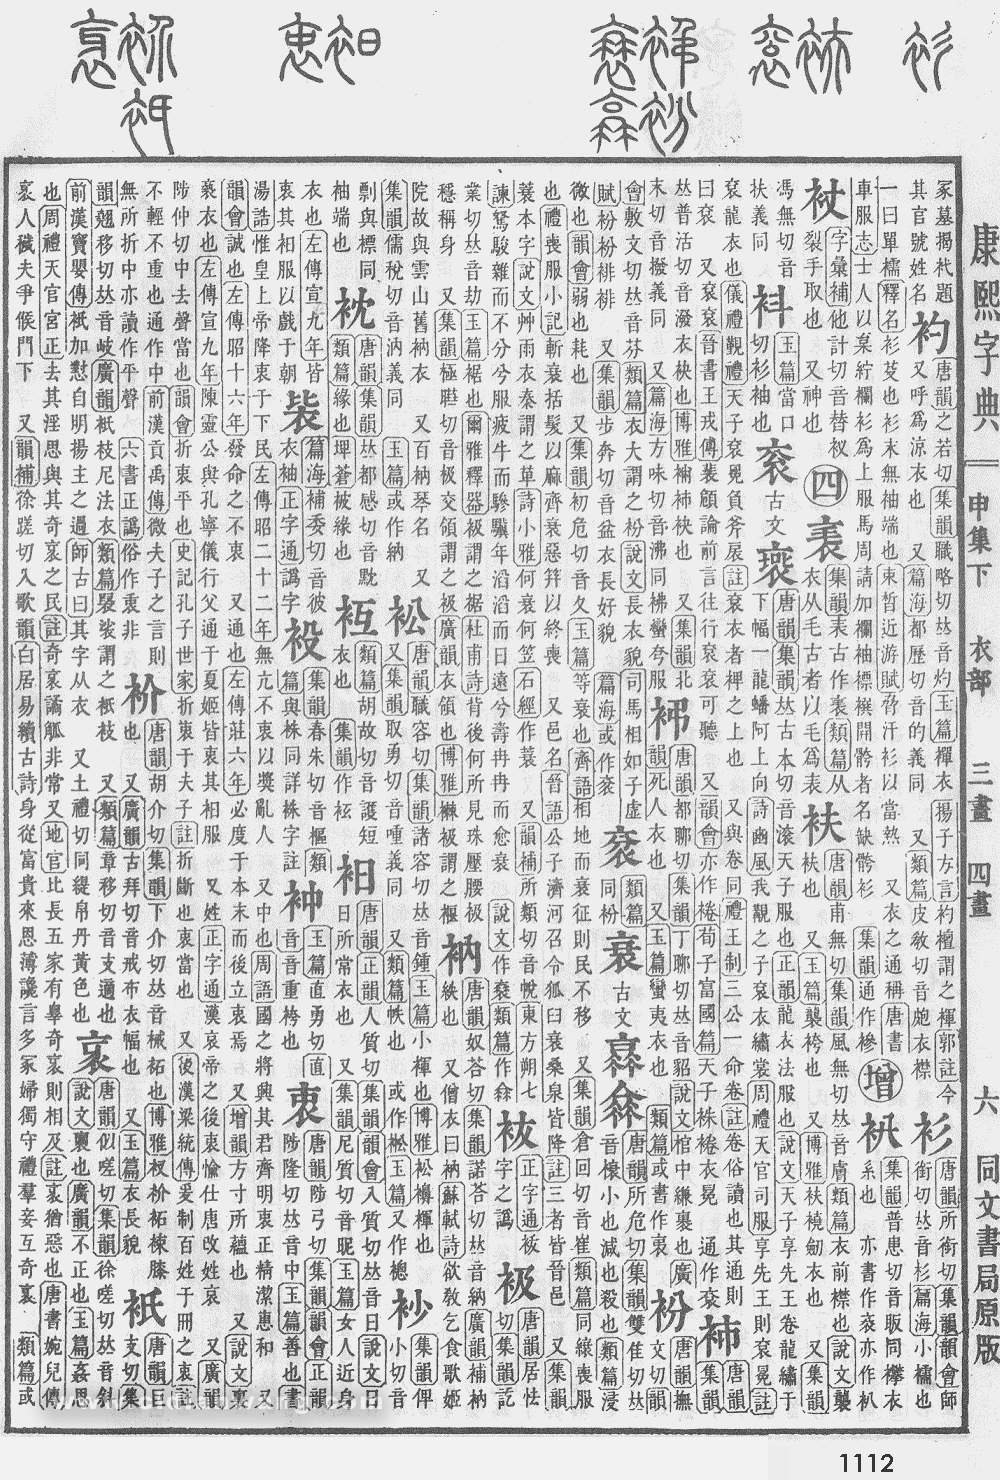 康熙字典掃描版第1112頁